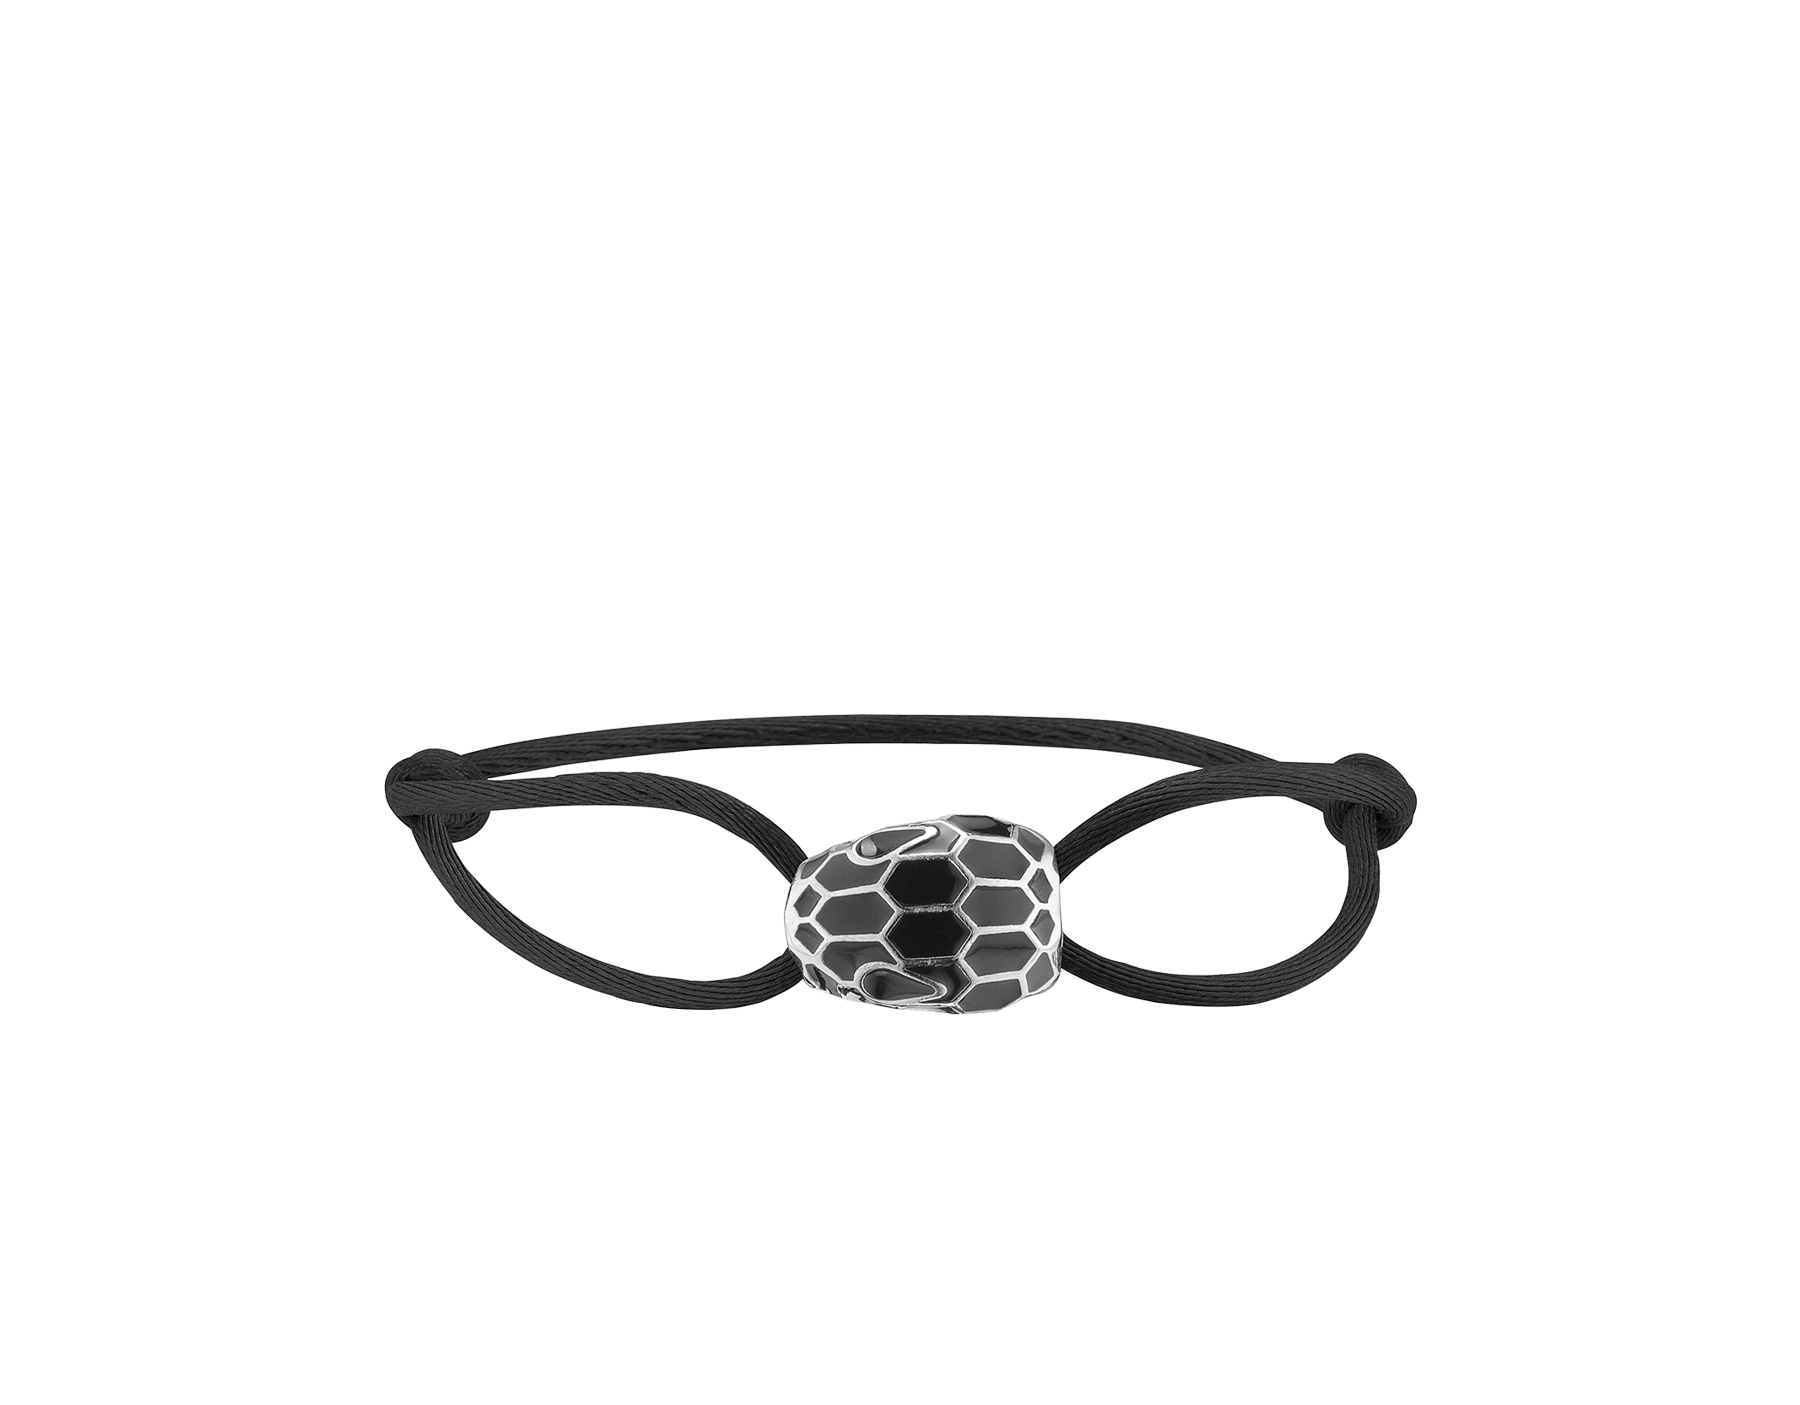 Serpenti Forever Armband aus Seide in Fire Amber mit ikonischem Schlangenkopf aus Emaille in Fire Amber und Schwarz sowie mit verführerischen Augen aus schwarzer Emaille. SERP-STRINGd image 1